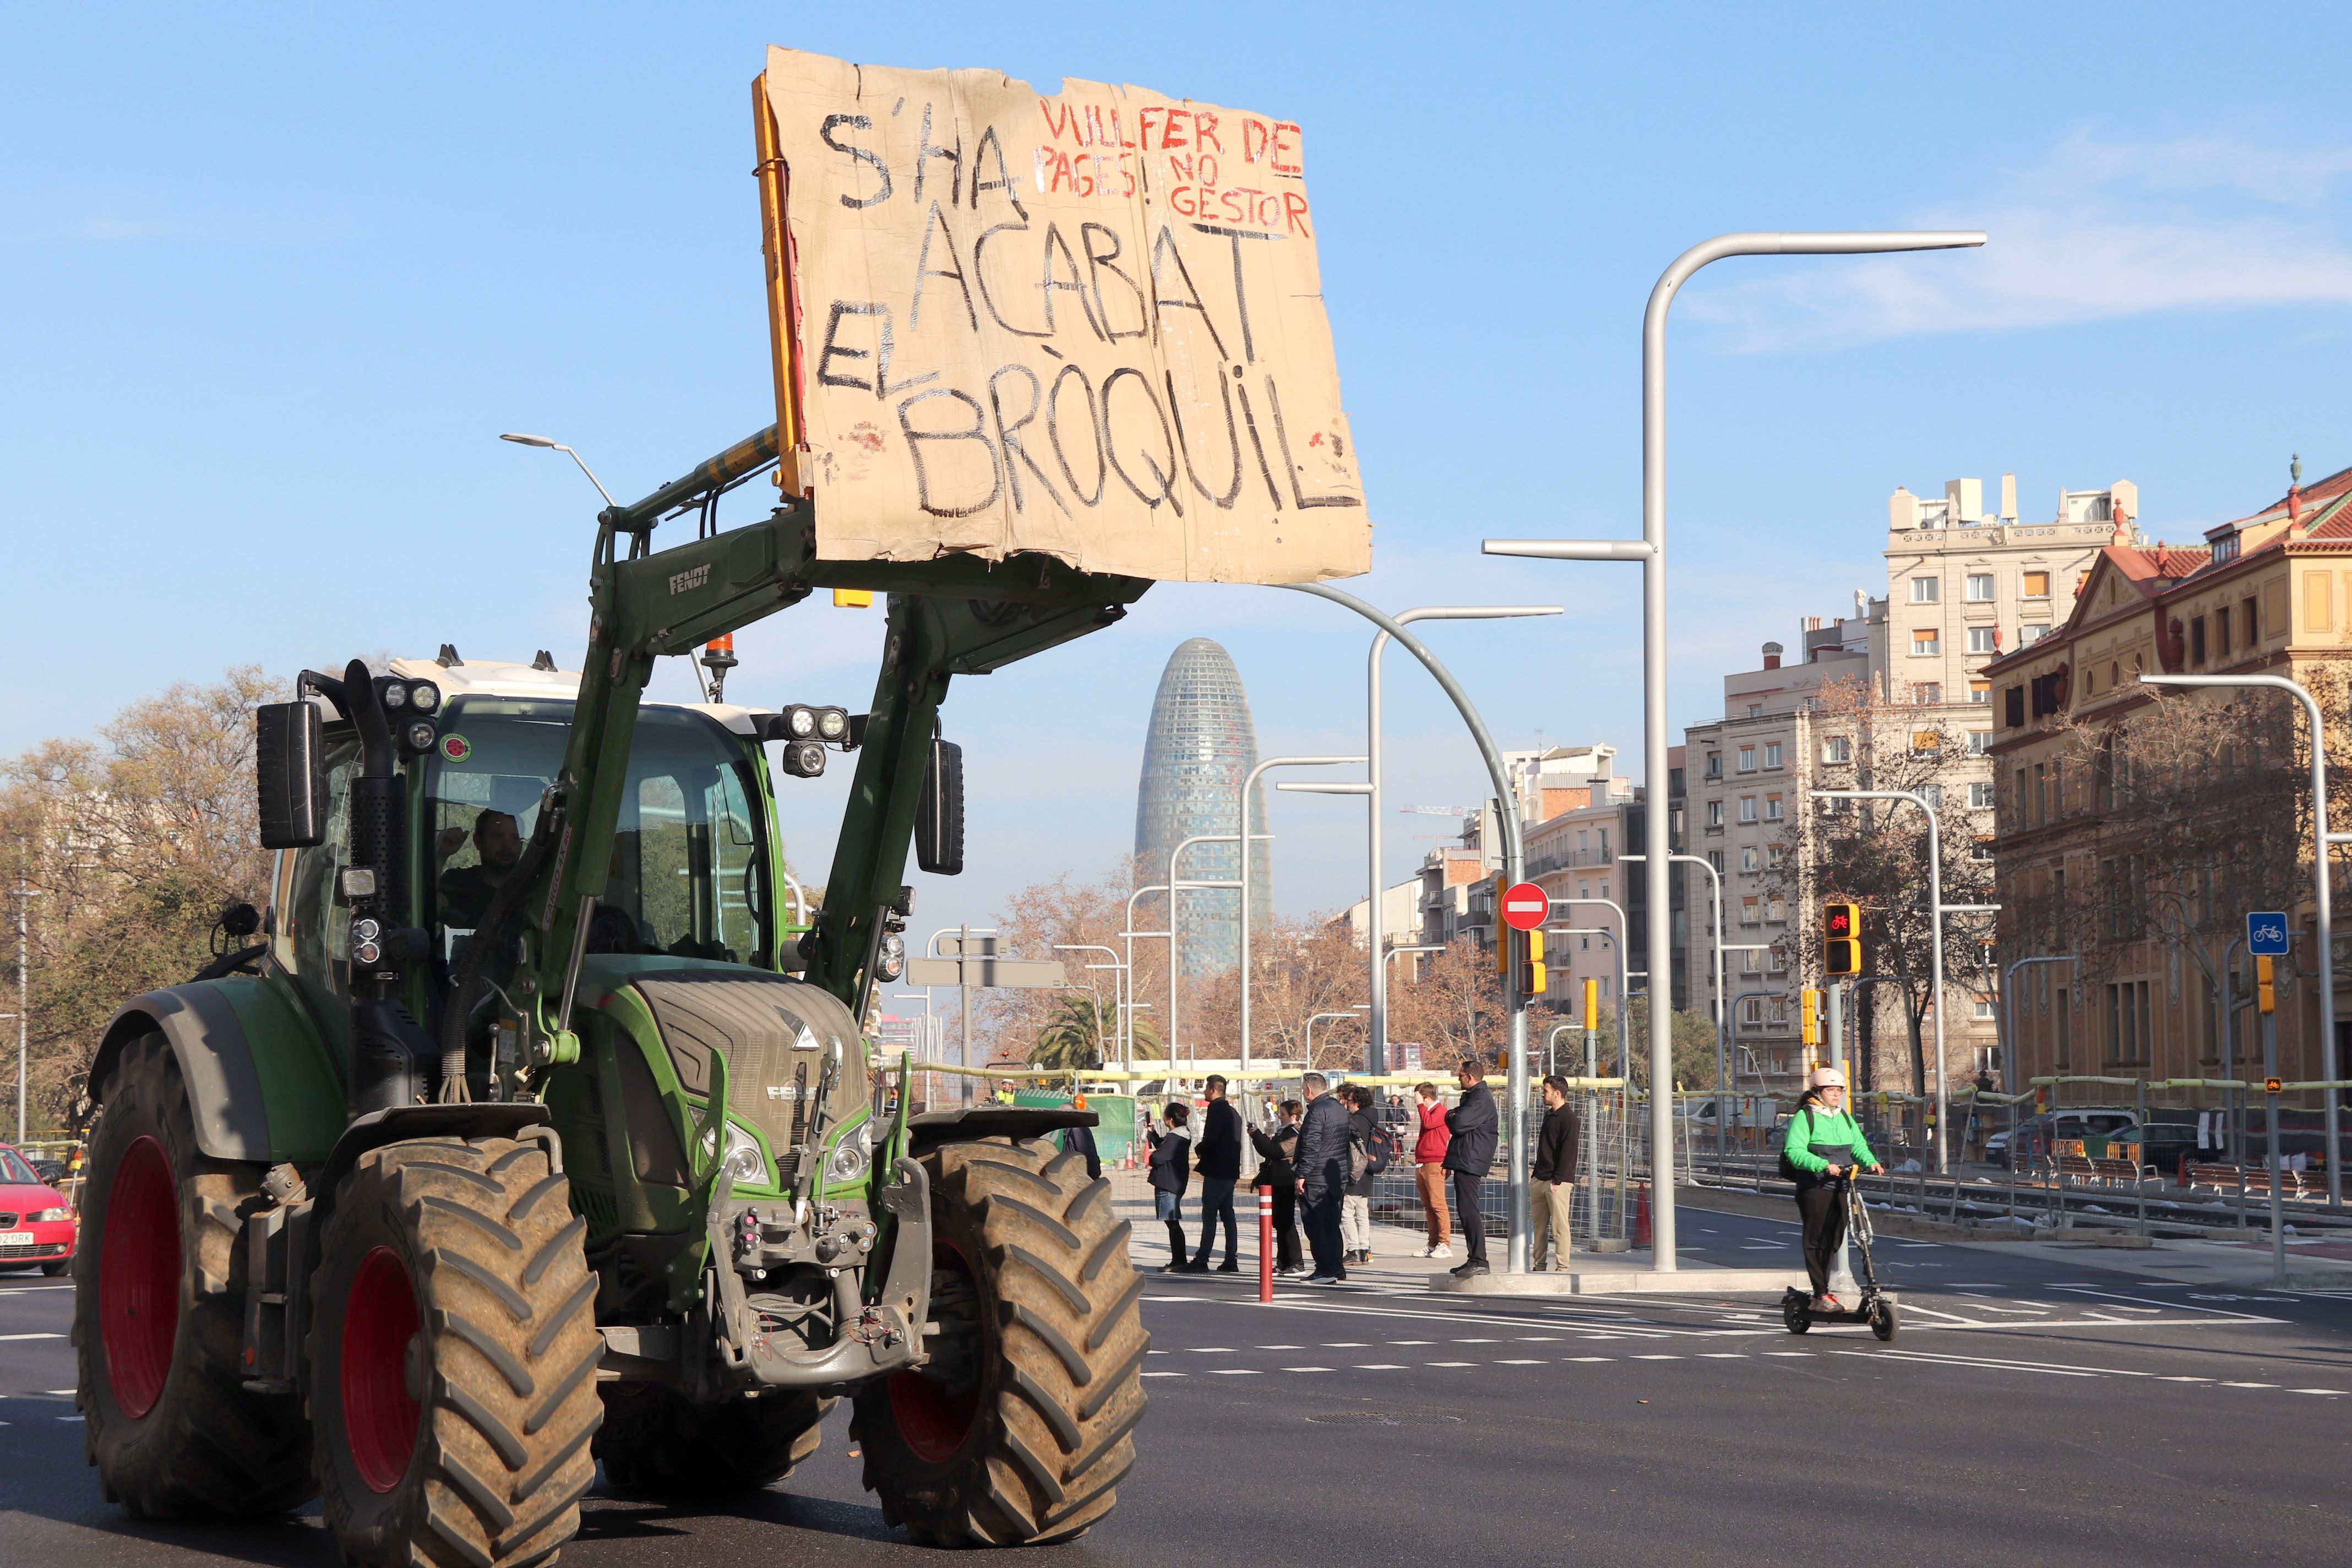 pagesia-pagesos-pageses-protestes-manifestacio-mobilitzacio-tractors-barcelona-meridiana-catalunya